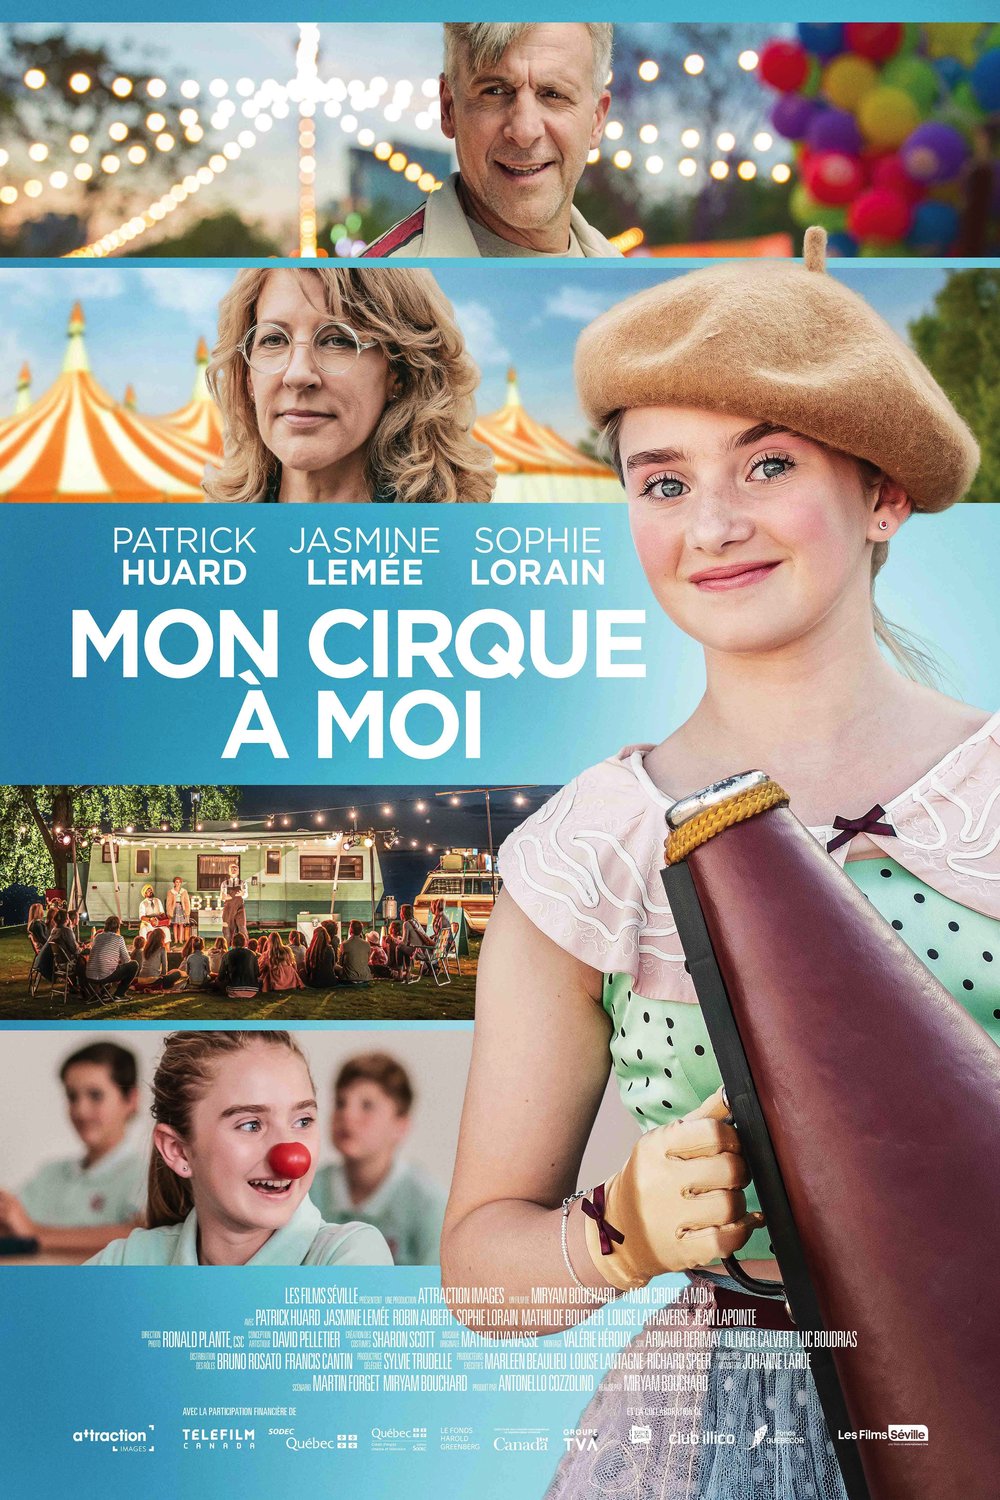 Poster of the movie Mon cirque à moi